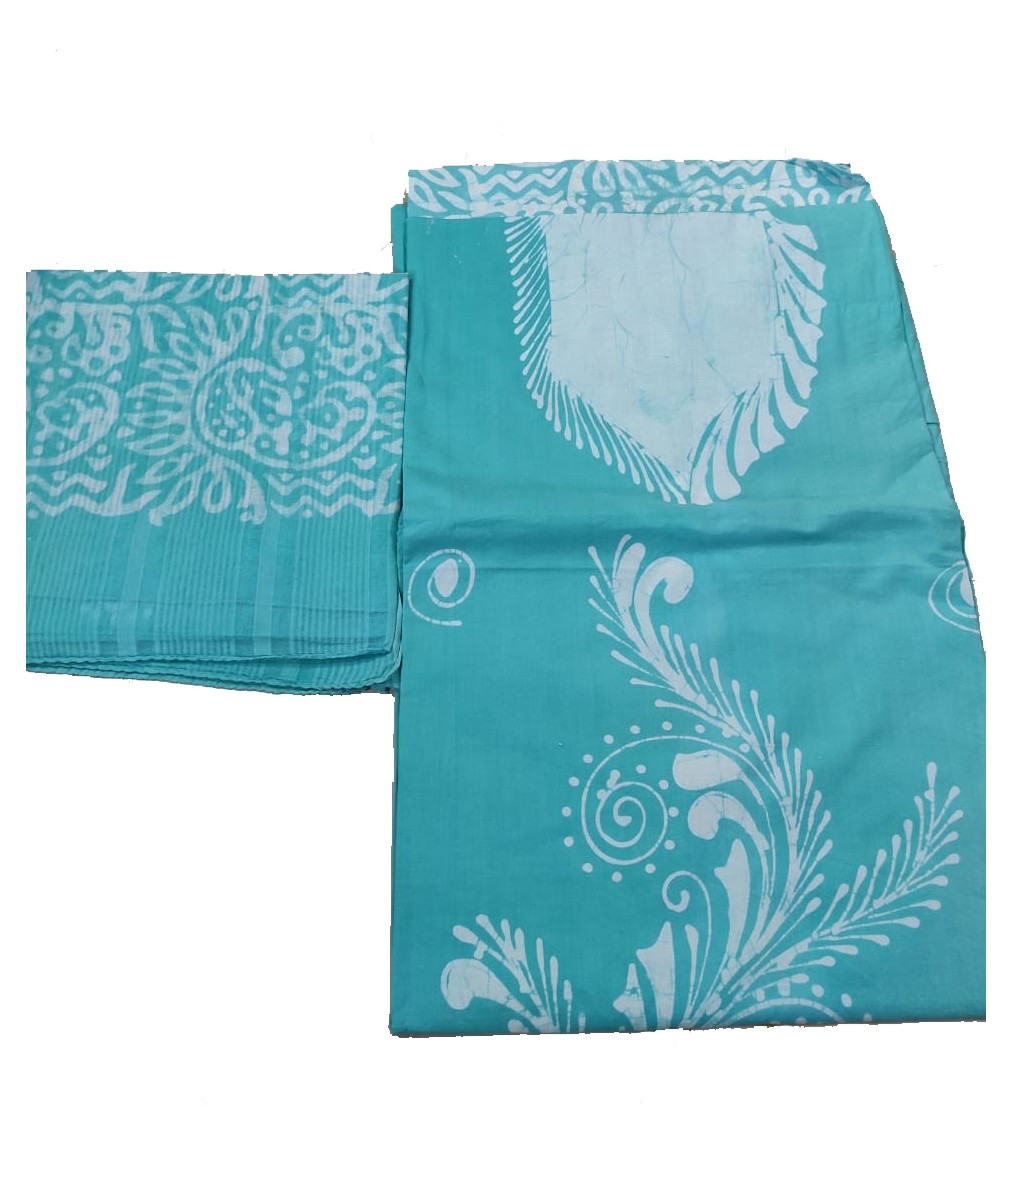 Batik Dress Material